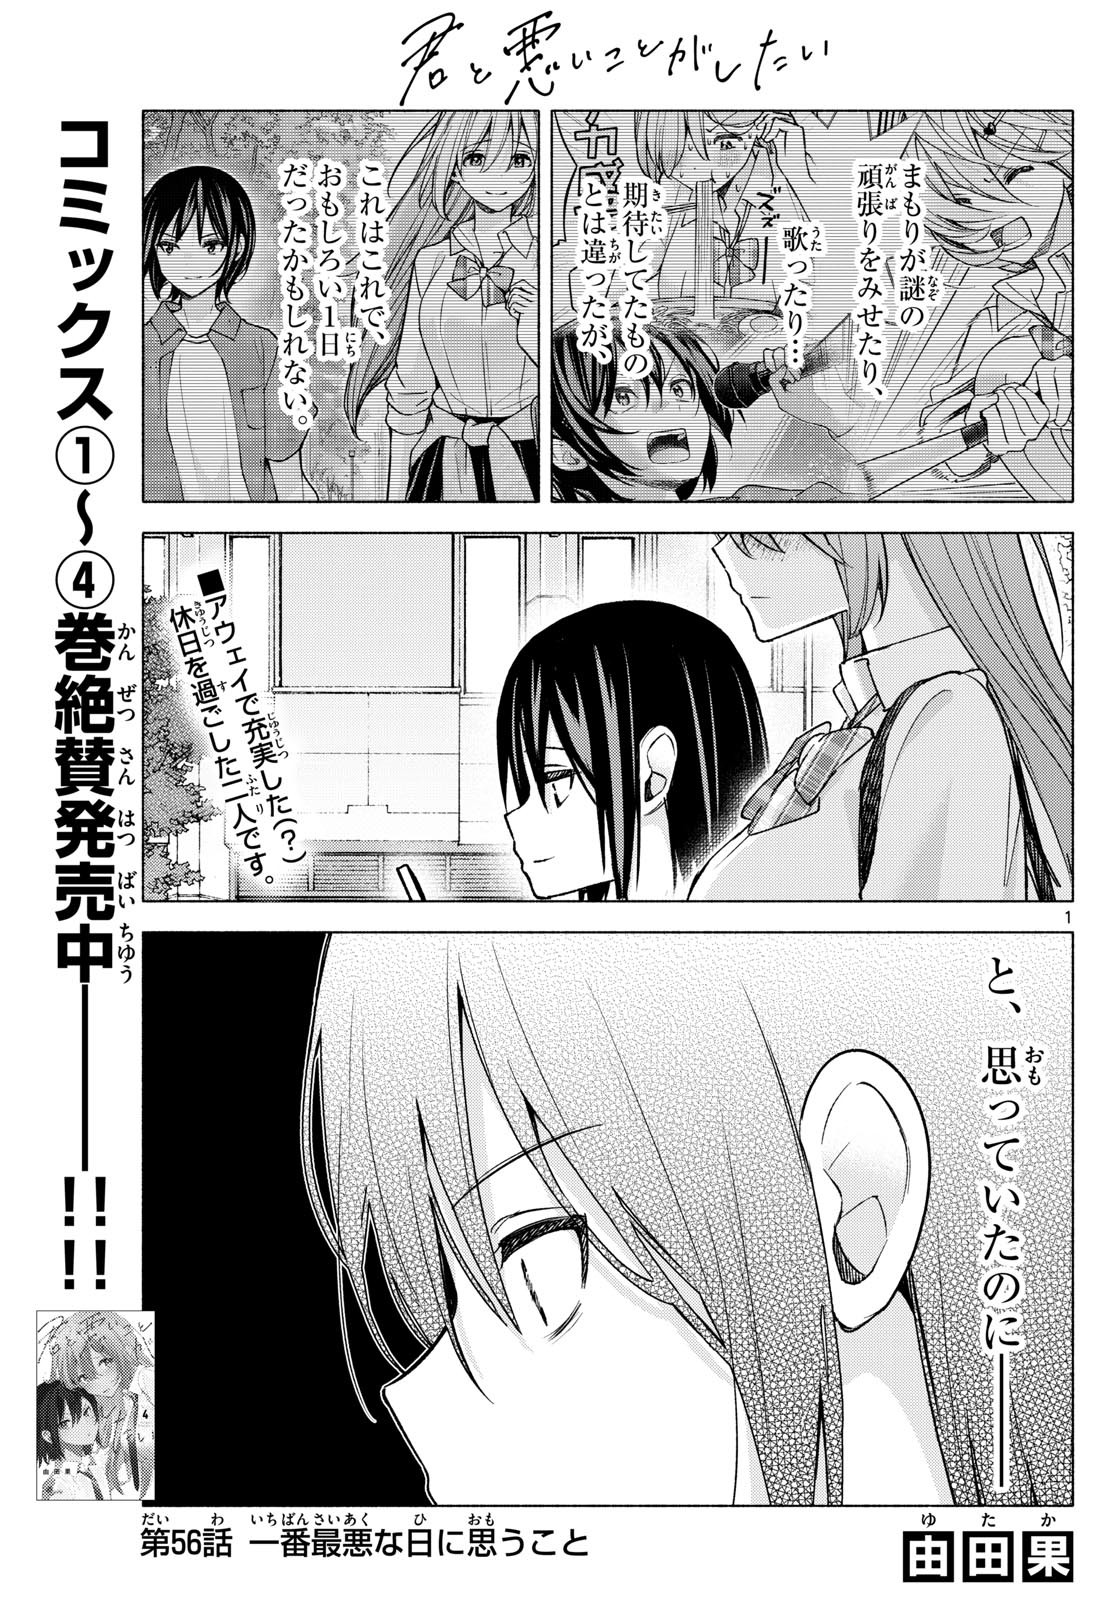 Kimi to Warui Koto ga Shitai - Chapter 056 - Page 1